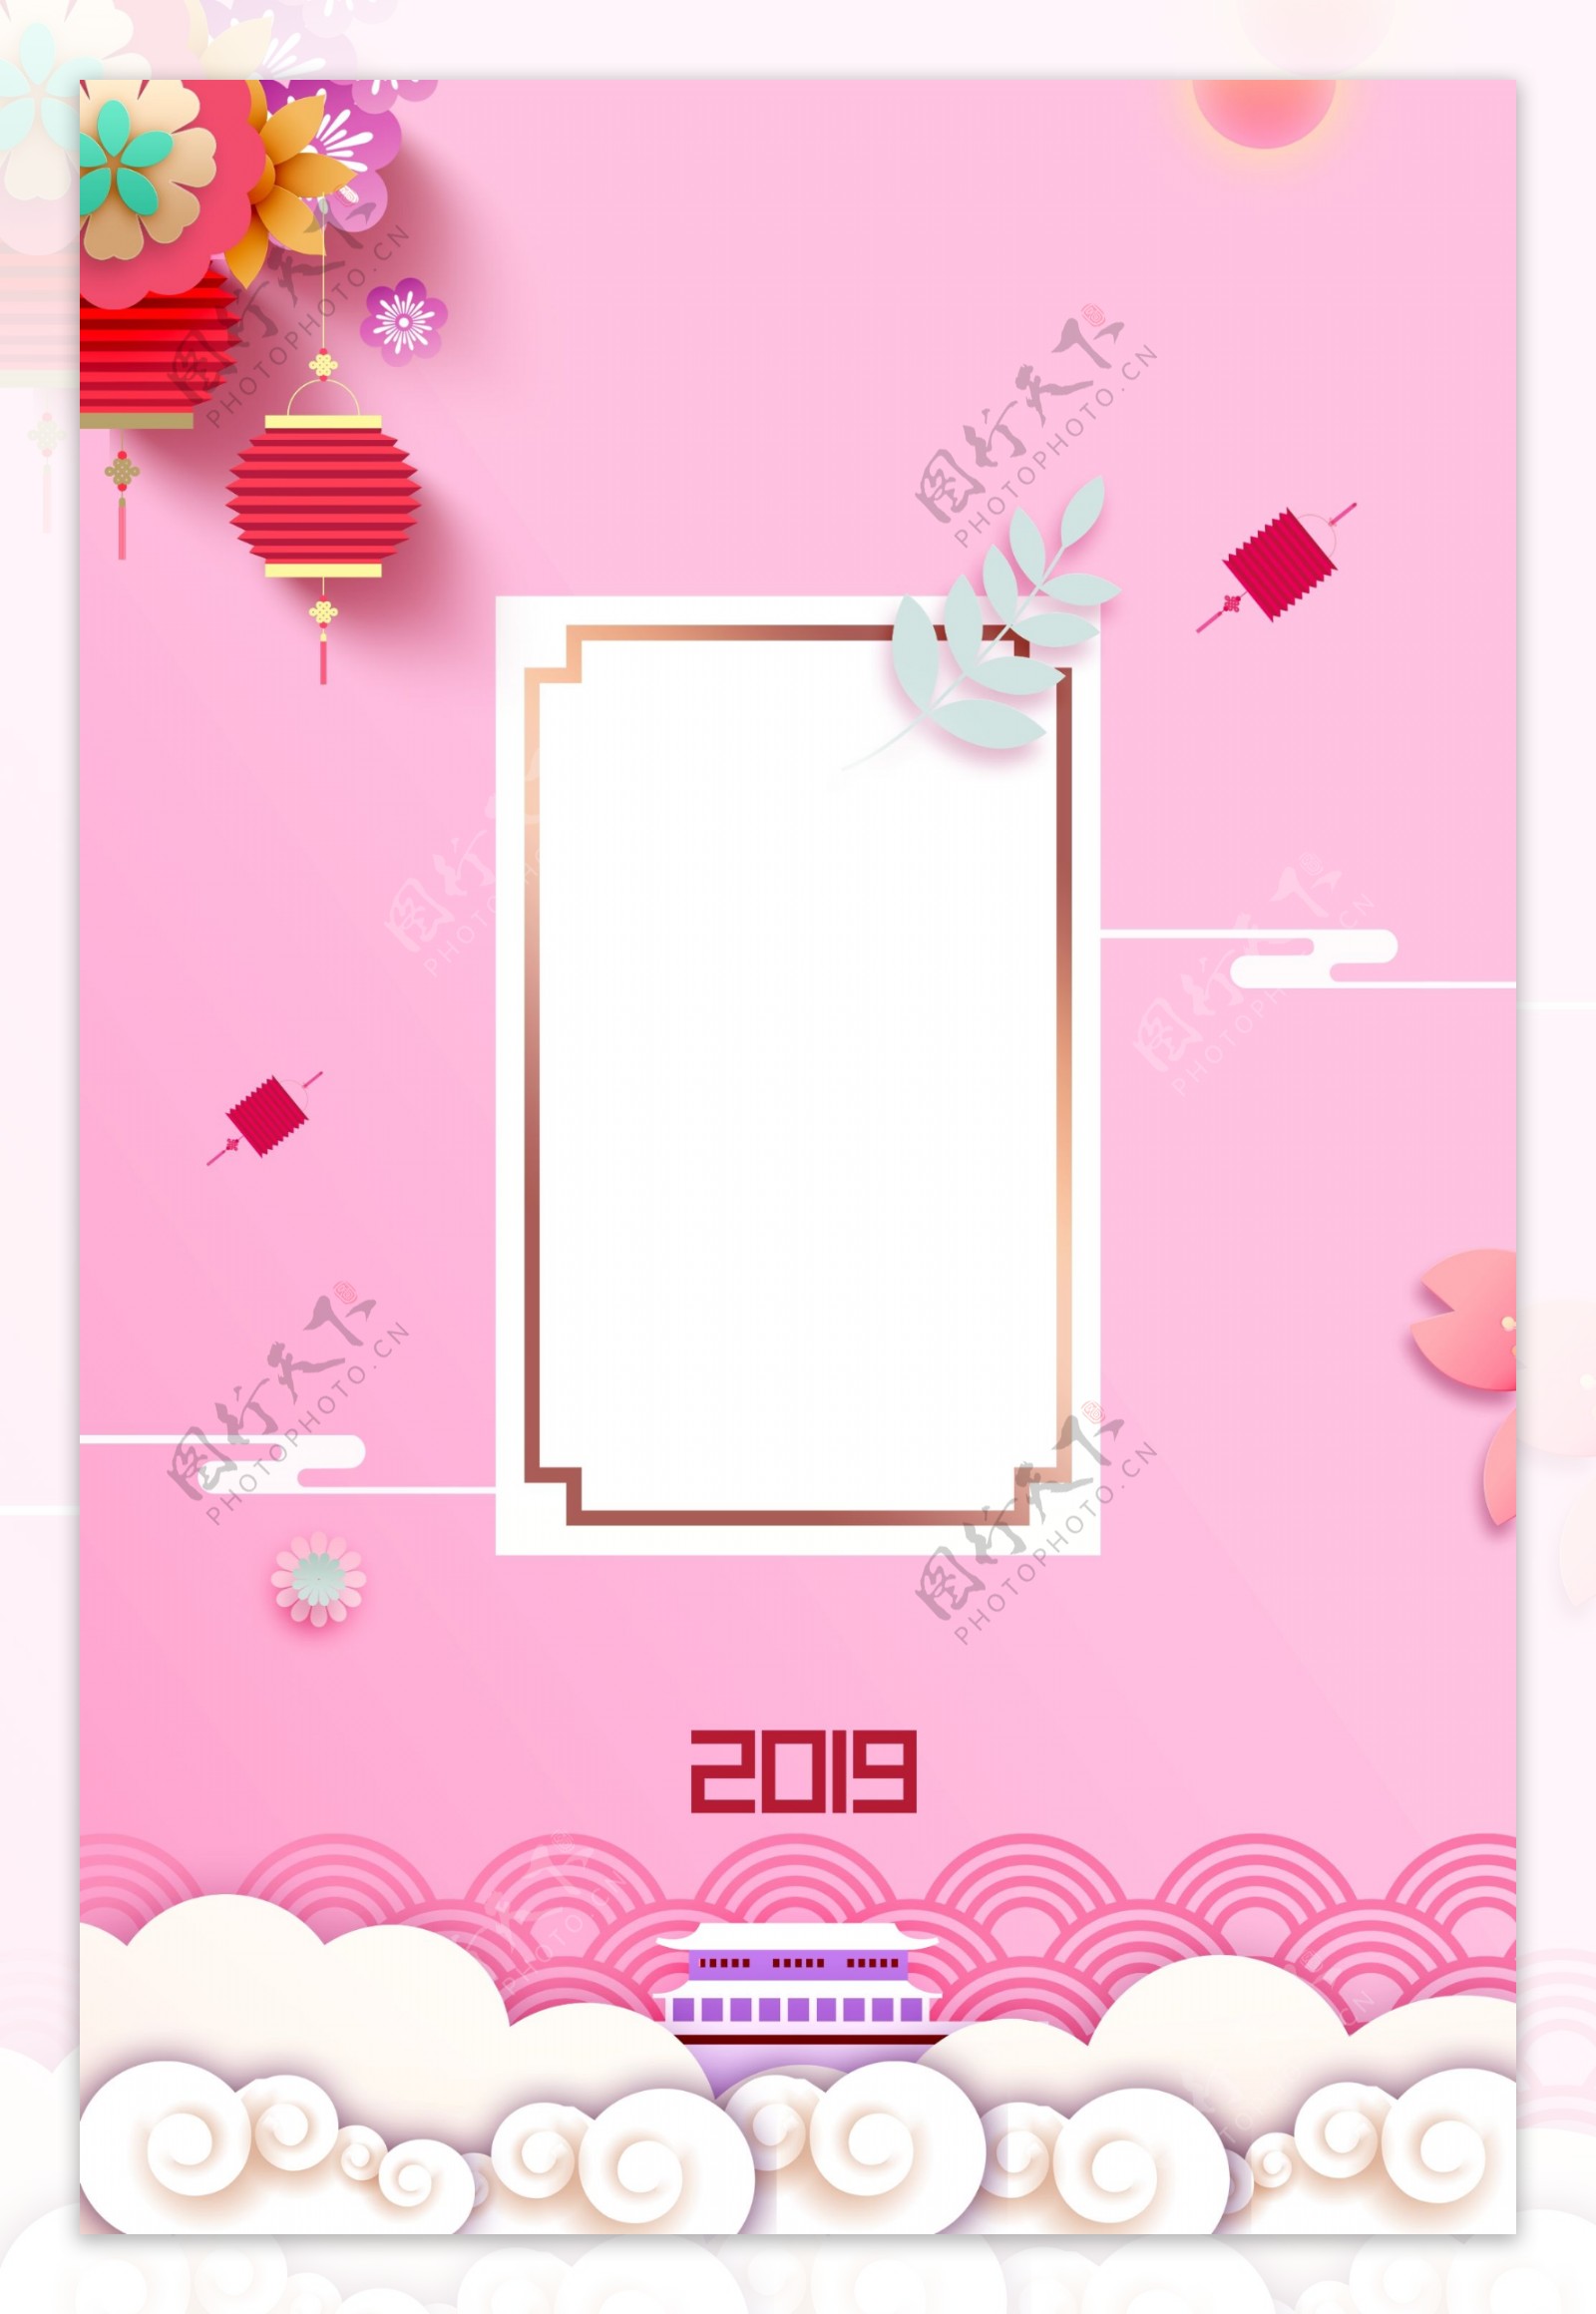 粉色2019猪年春节背景素材